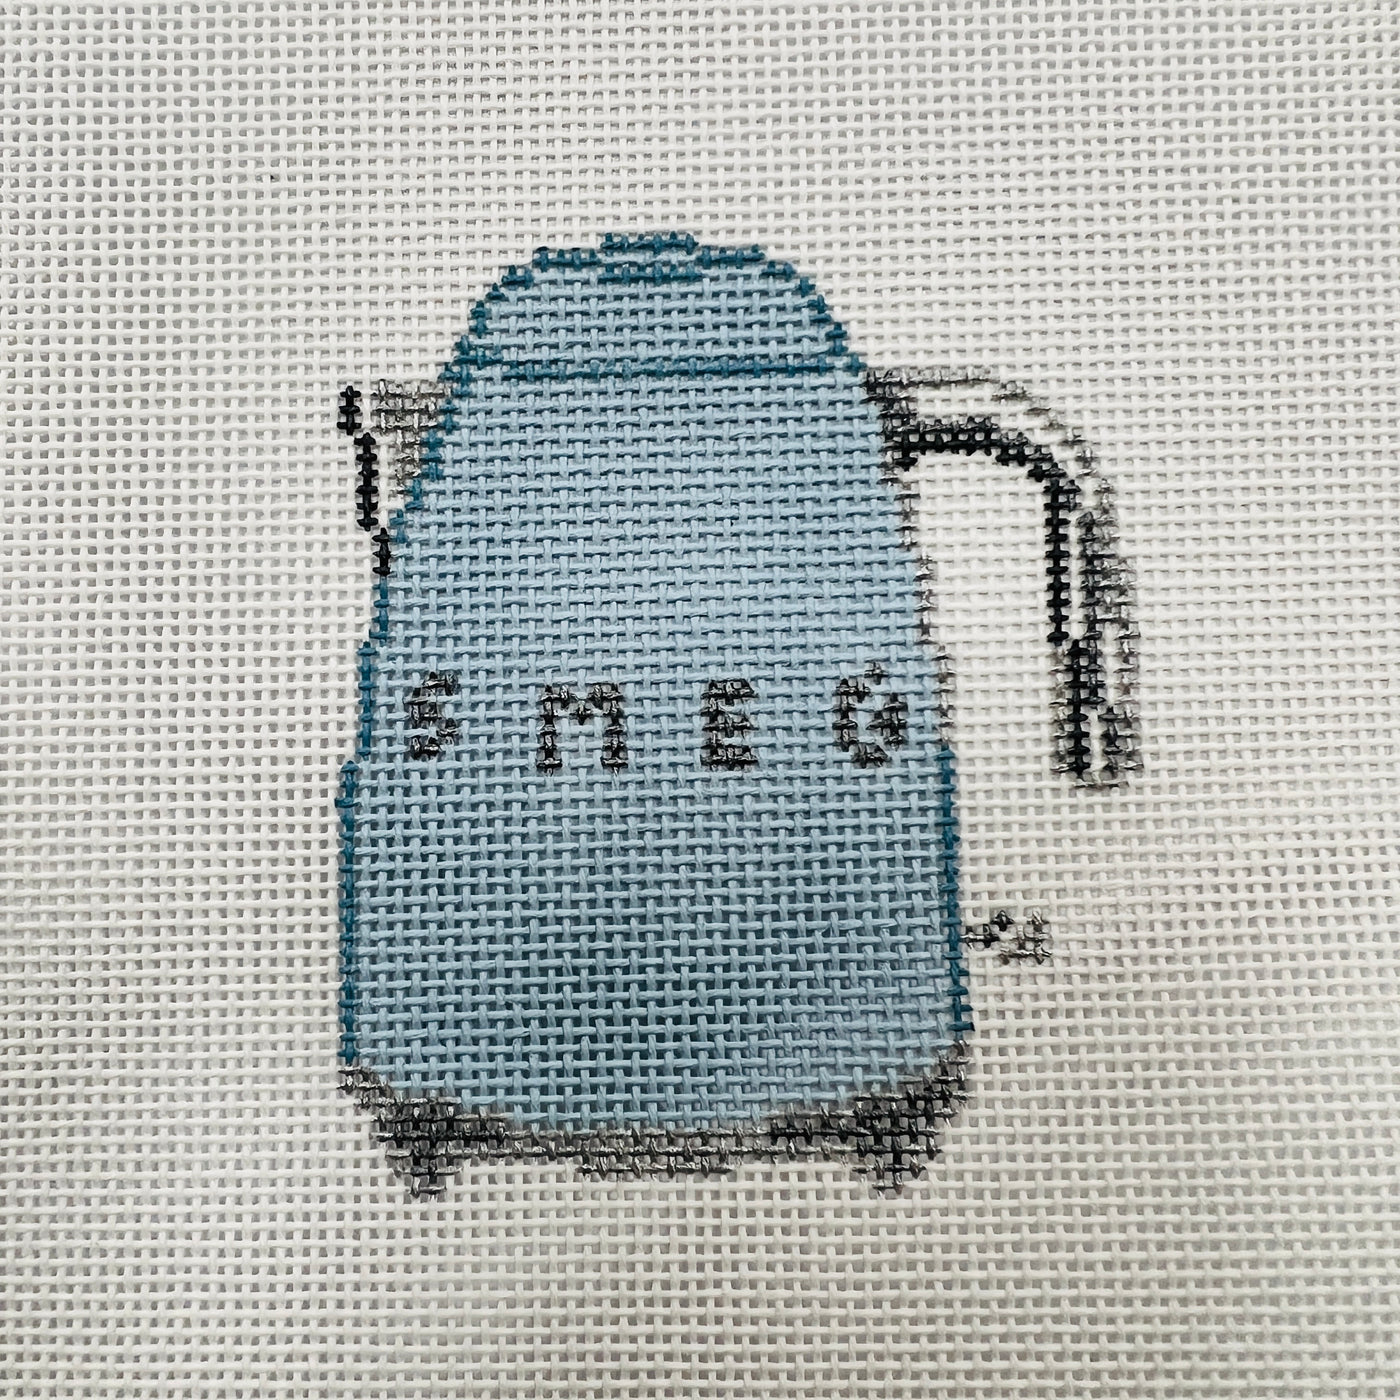 Smeg Tea Kettle Needlepoint Canvas